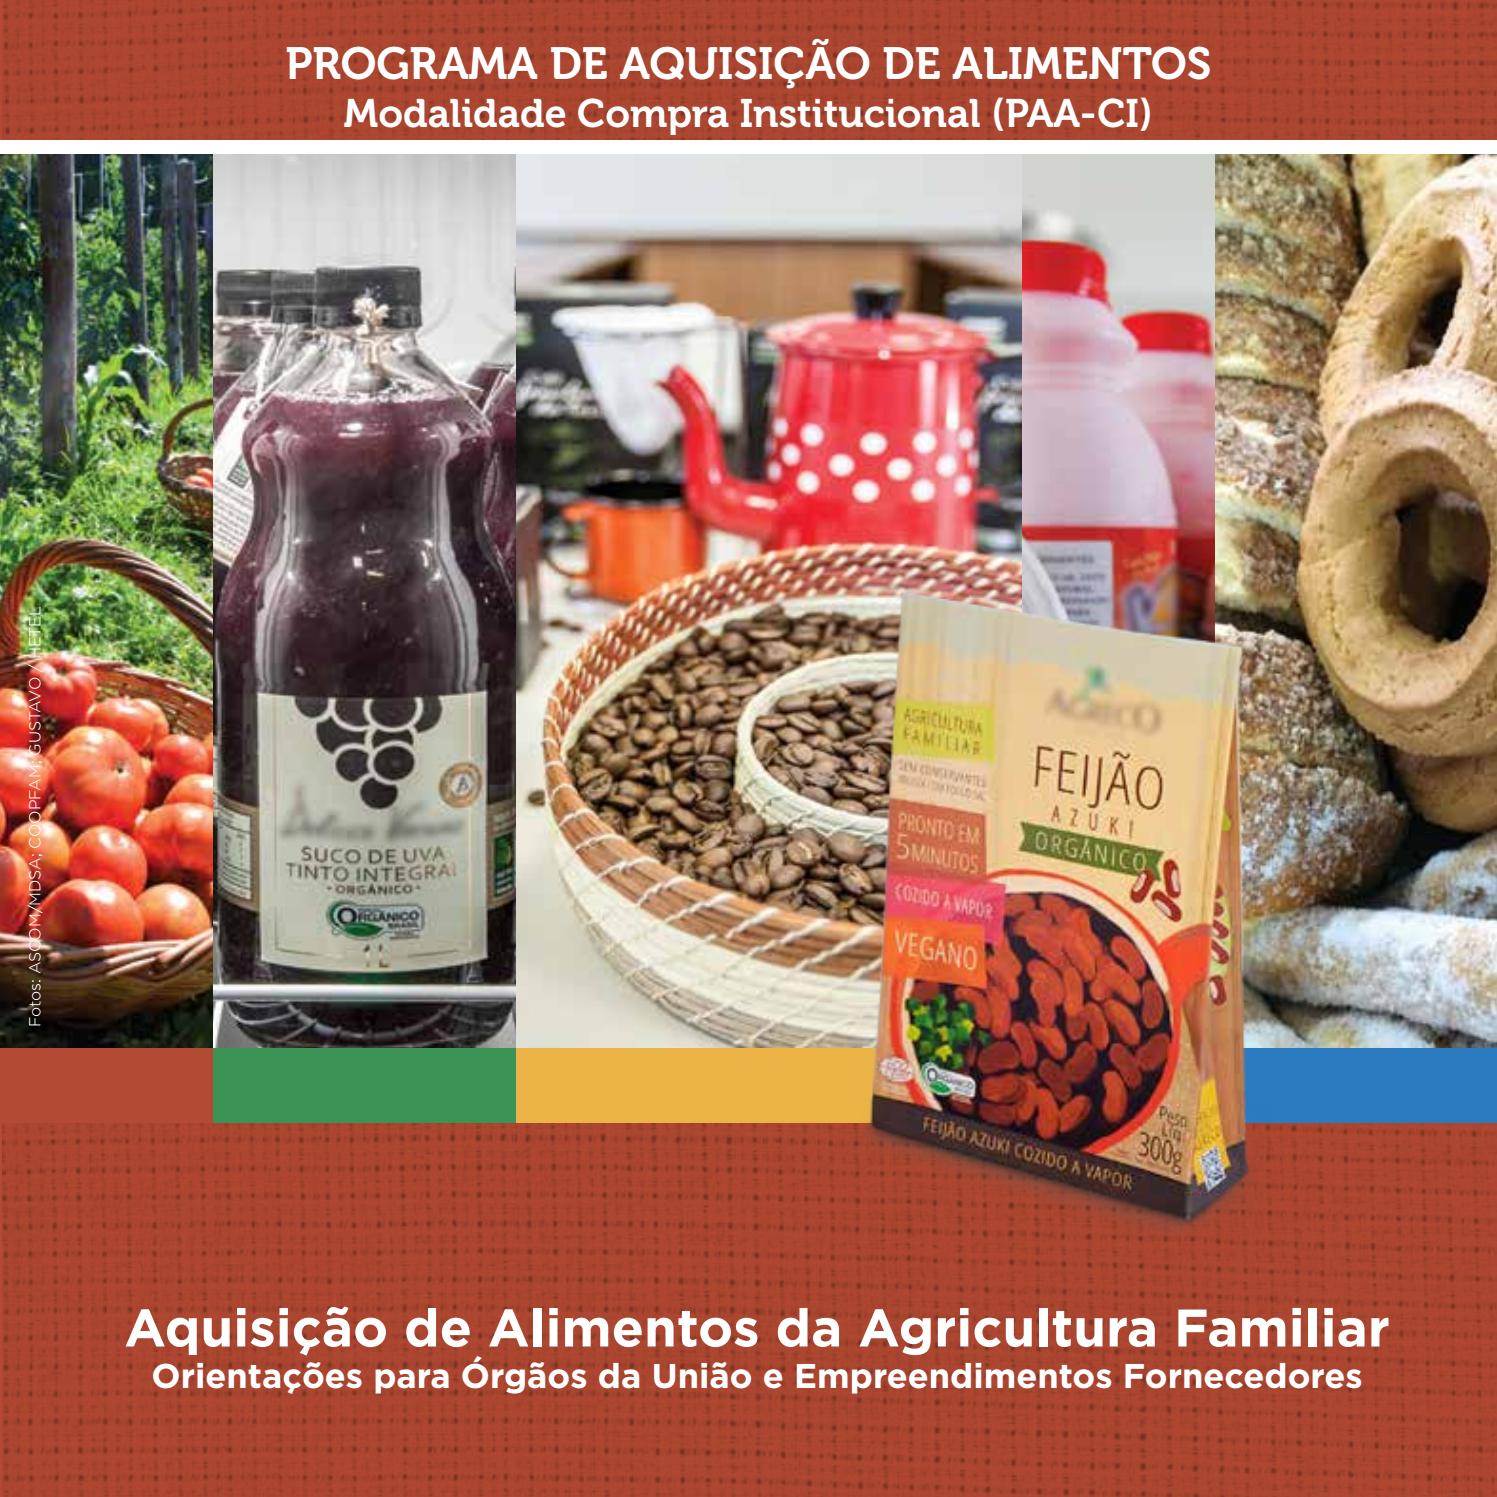 Aquisição de Alimentos da Agricultura Familiar: Orientações para Órgãos da União e Empreendimentos Fornecedores